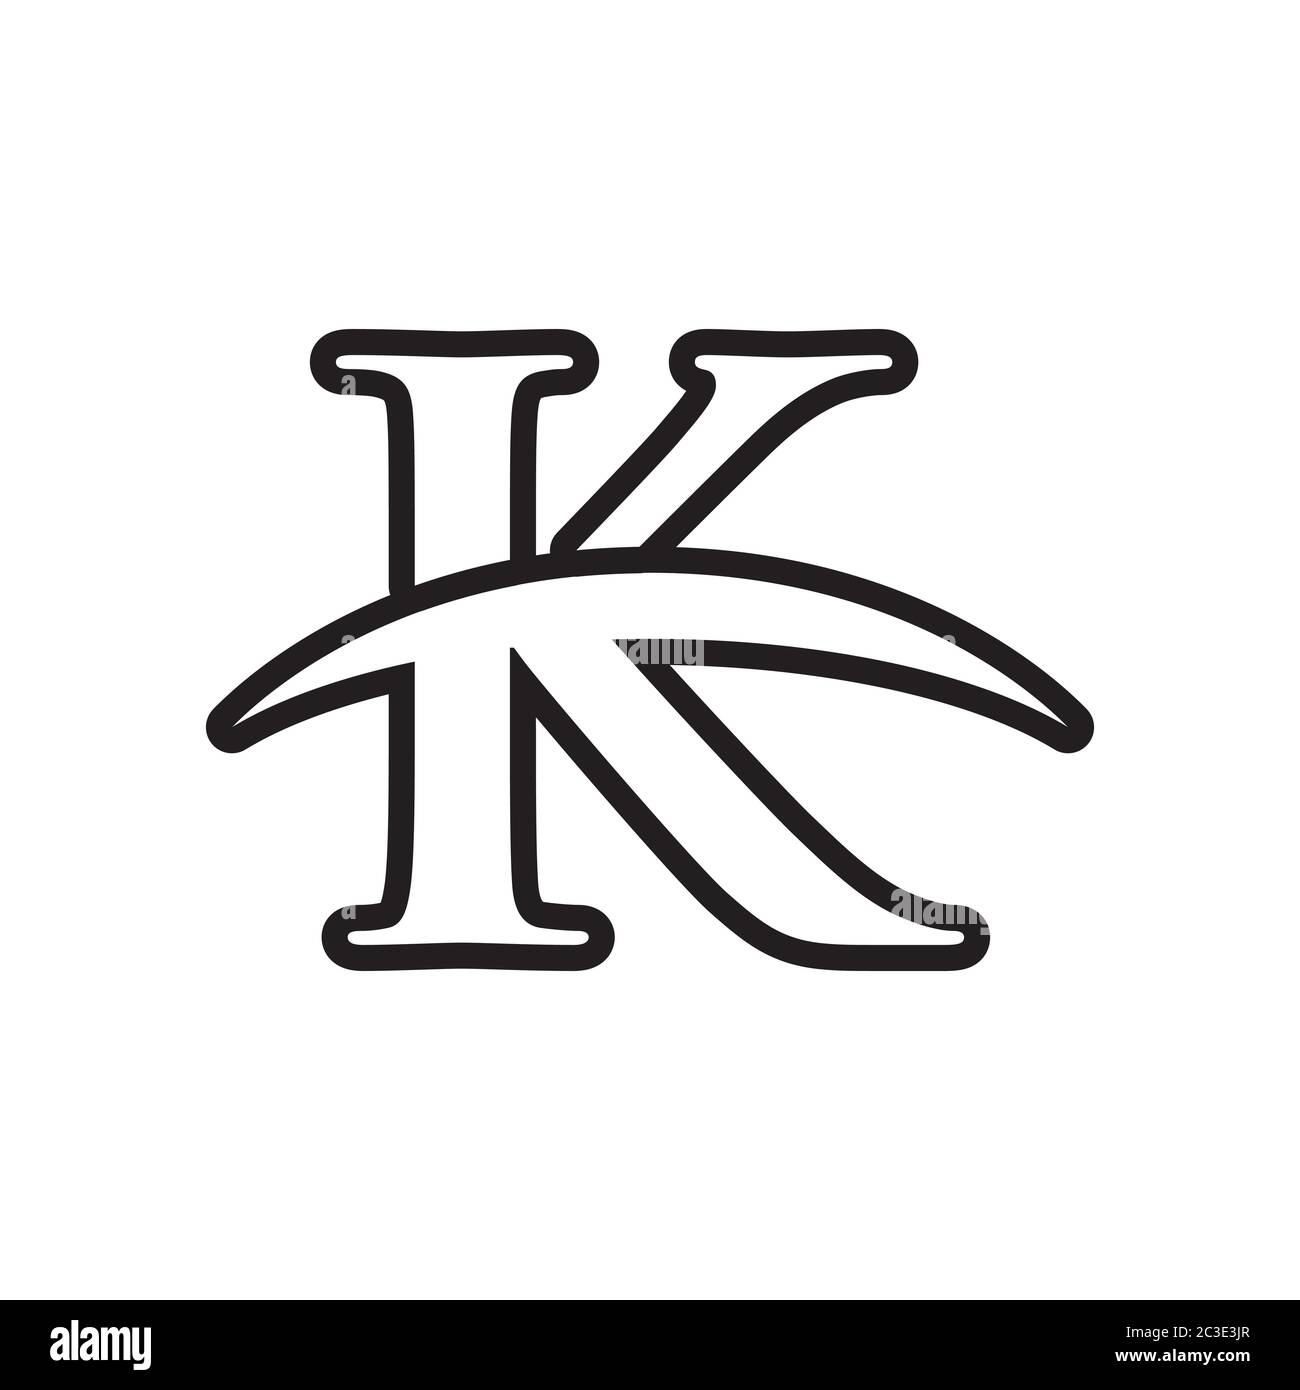 Vettore di disegno simbolo dell'icona lettera K isolato su sfondo bianco Illustrazione Vettoriale